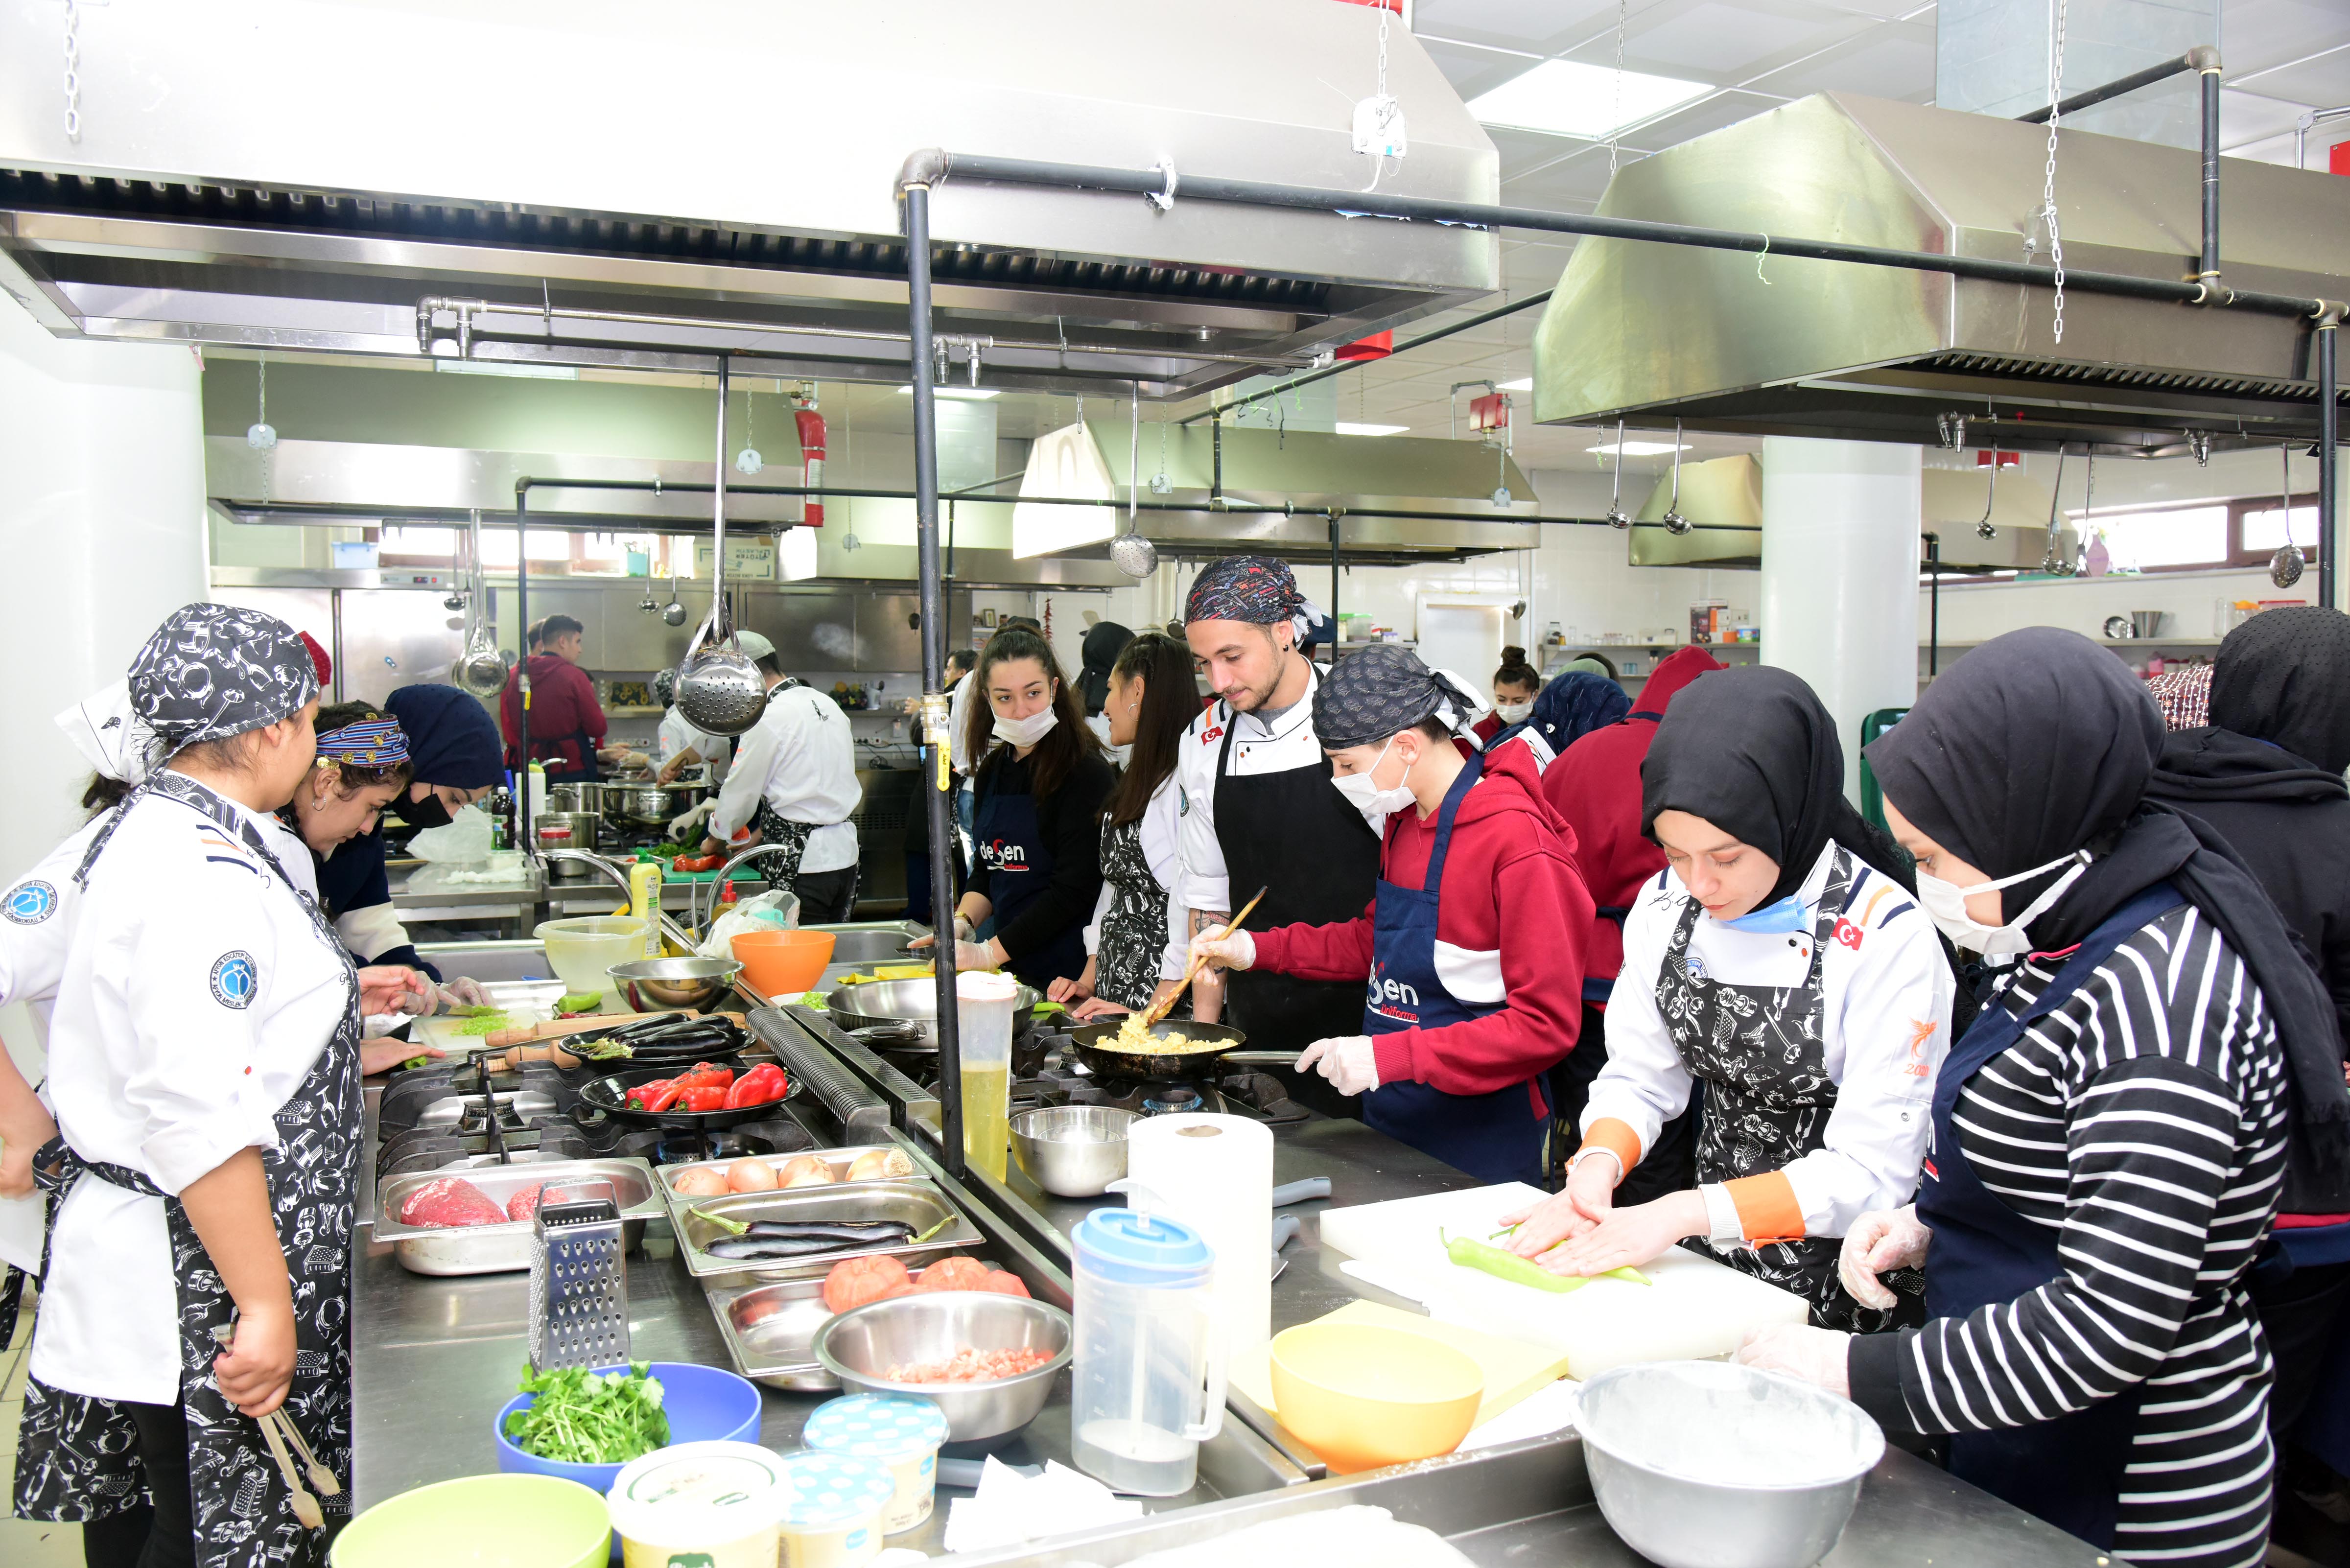 Afyon MYO Aşçılık Programından Sosyal Sorumluluk Etkinliği